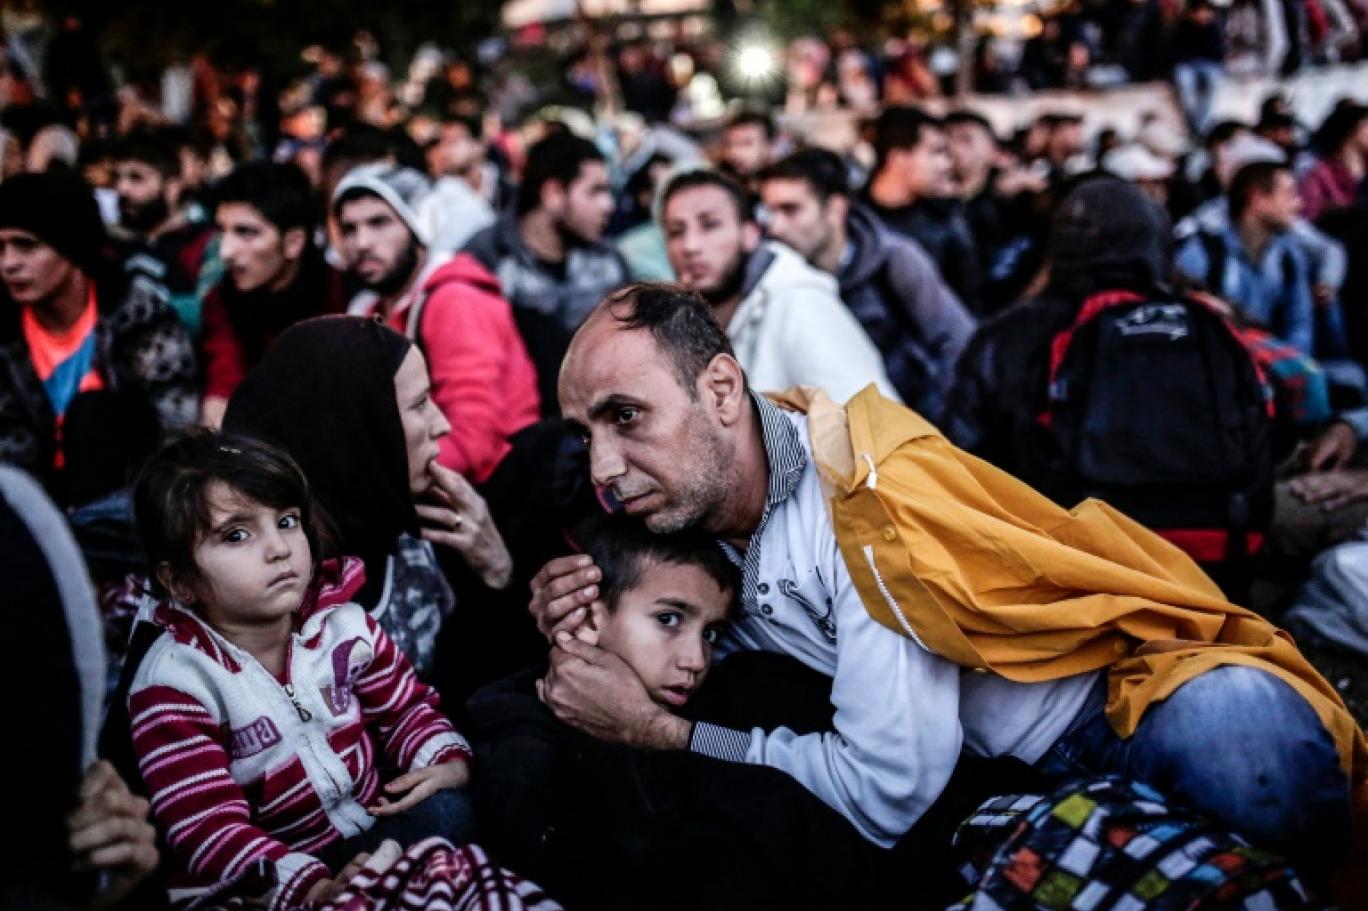 İstanbul'da yaşayan on binlerce "kayıtsız" göçmen sınır dışı ediliyor |  Independent Türkçe